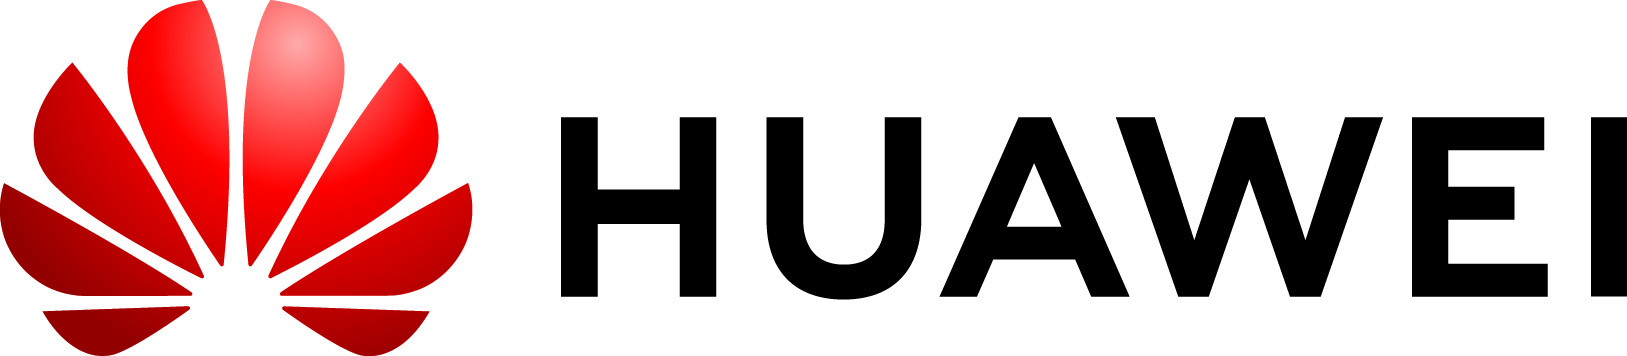 Huawei Technologies Logo | © Huawei Technologies